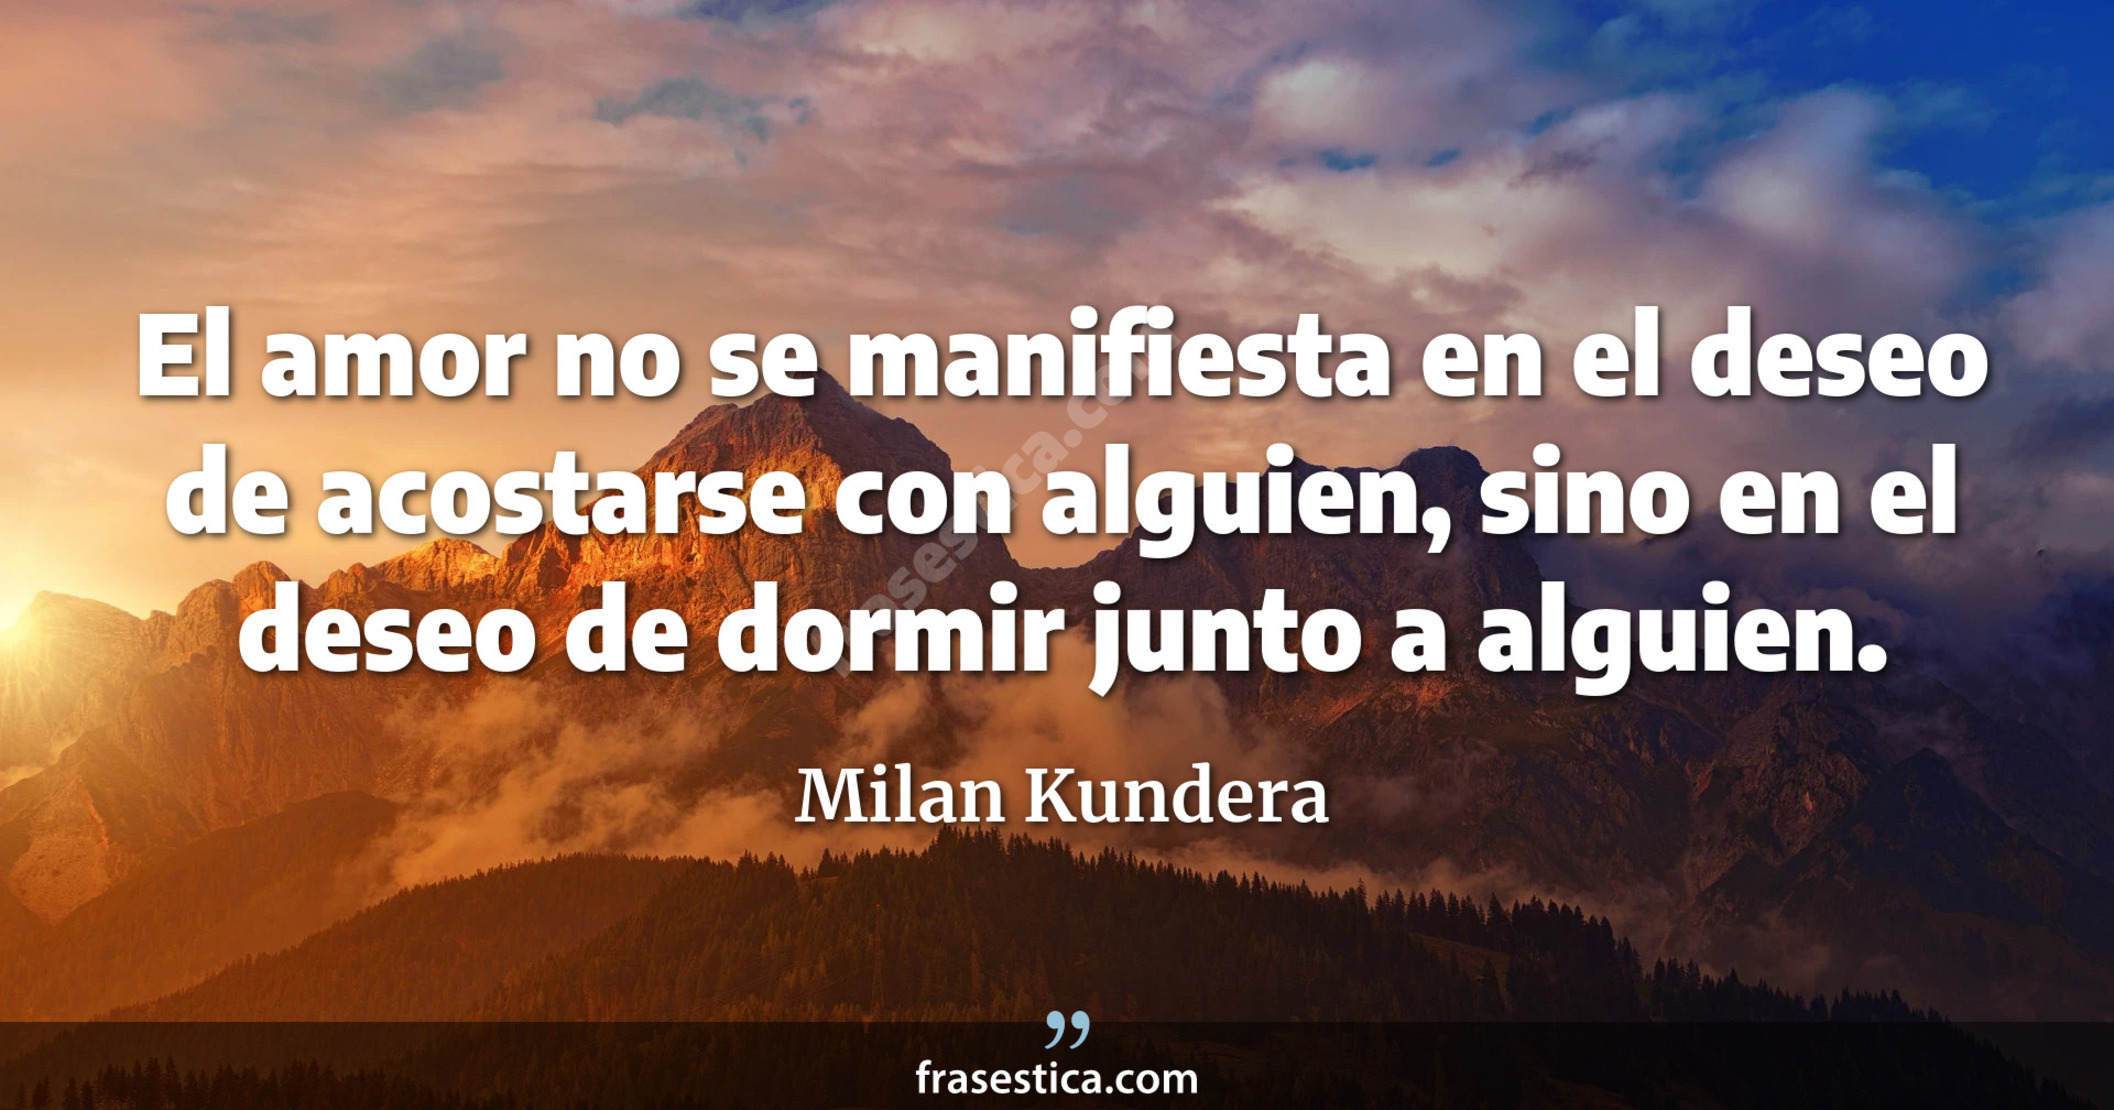 El amor no se manifiesta en el deseo de acostarse con alguien, sino en el deseo de dormir junto a alguien. - Milan Kundera